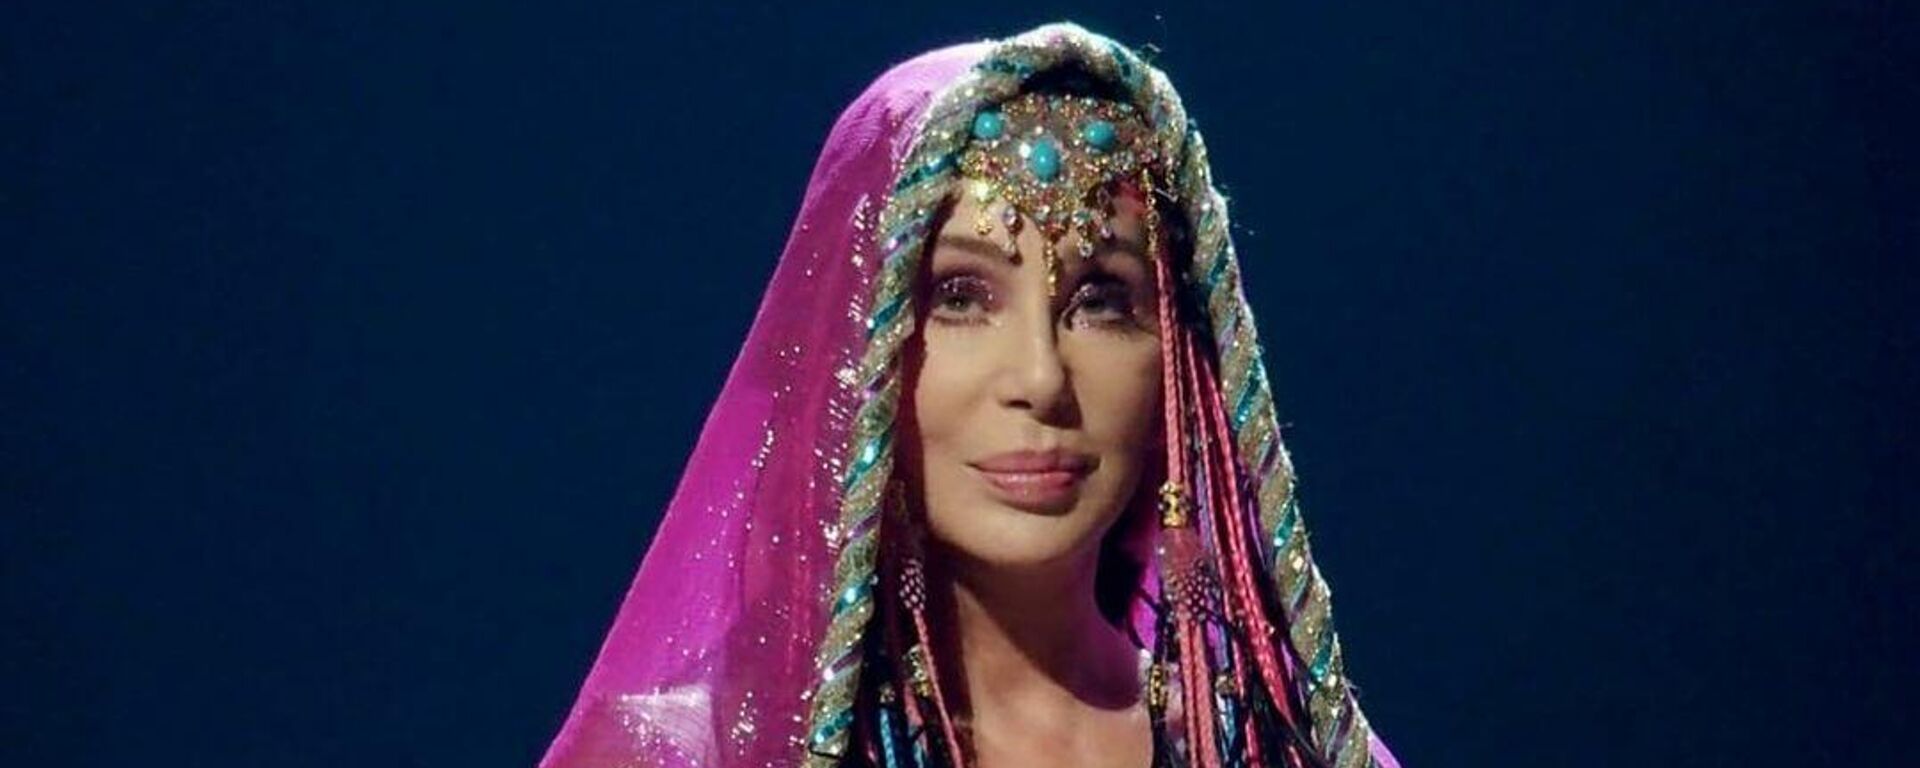 Cher, cantante estadounidense - Sputnik Mundo, 1920, 21.07.2021